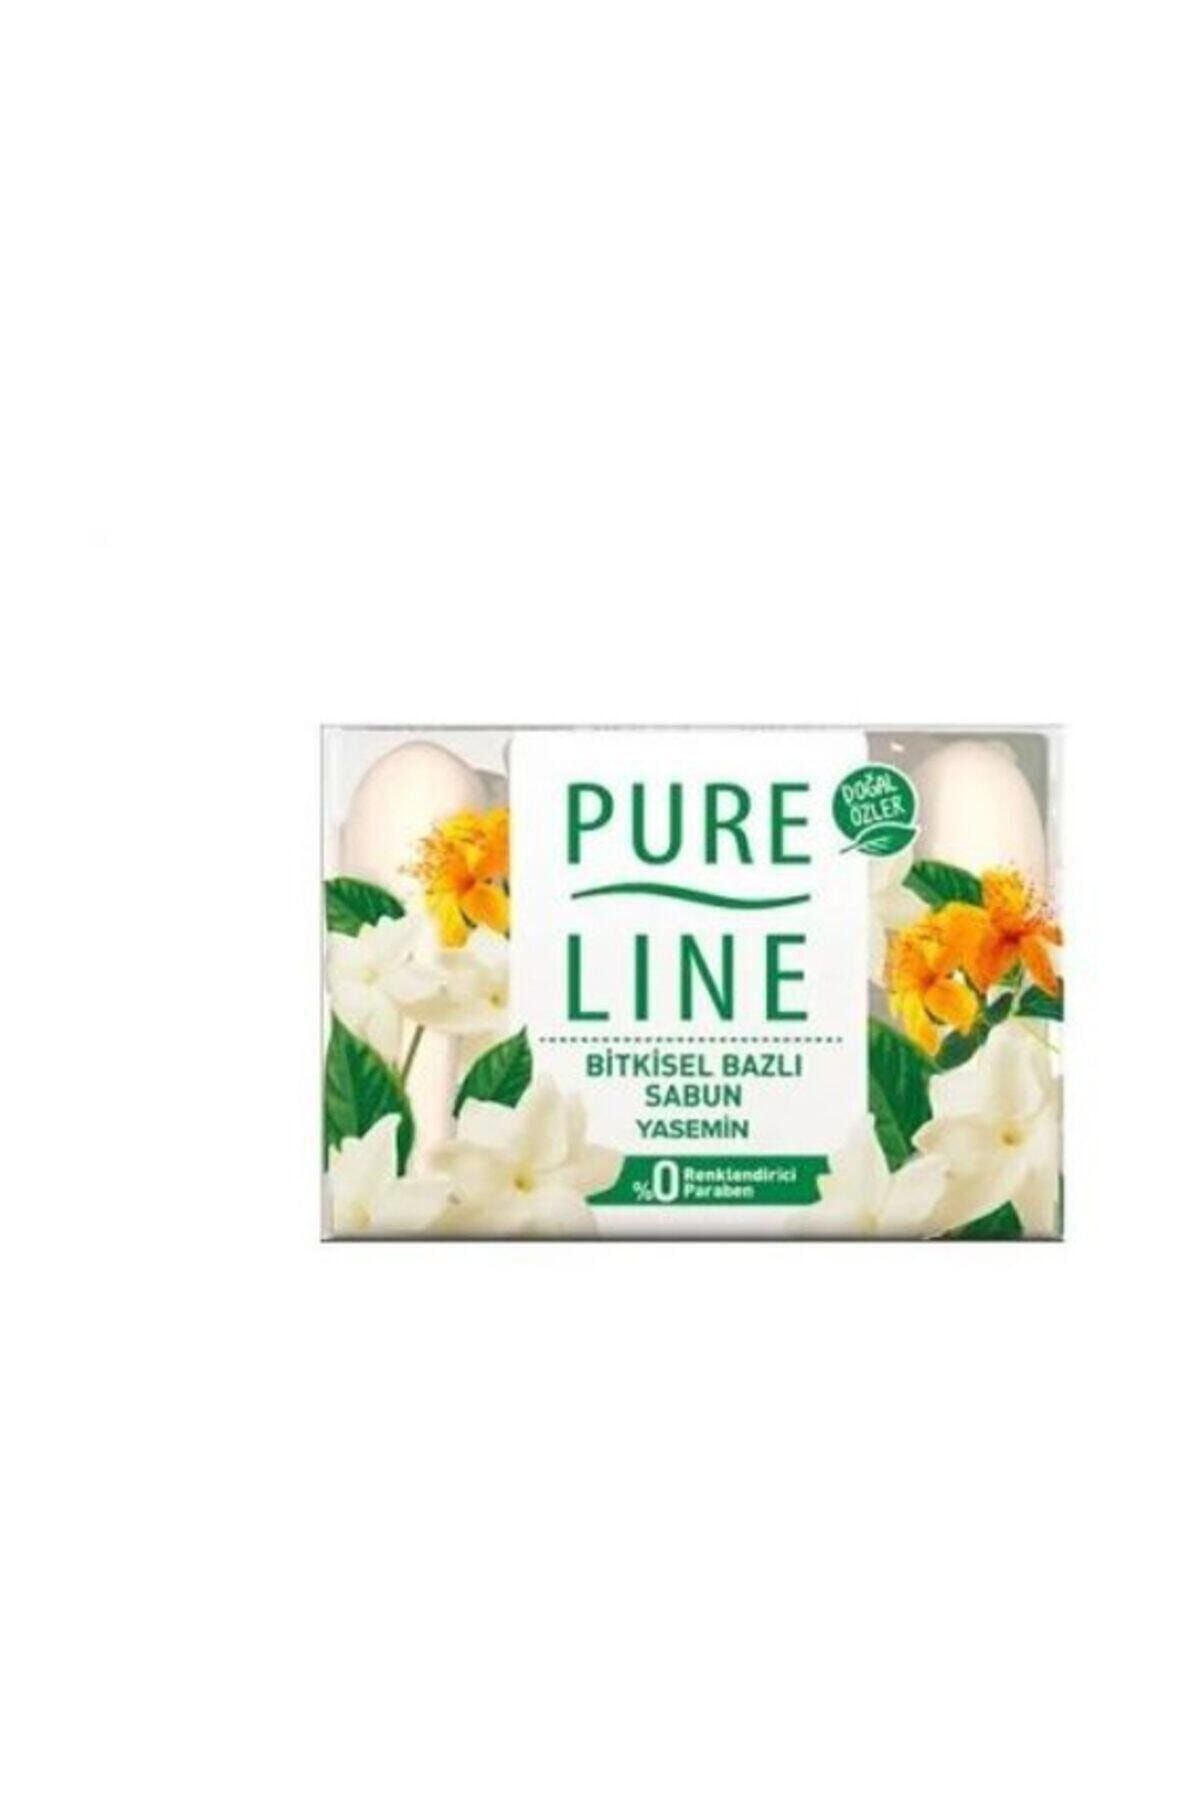 Pure Line Doğal Özler Bitkisel Bazlı Sabun Yasemin 70 Gr